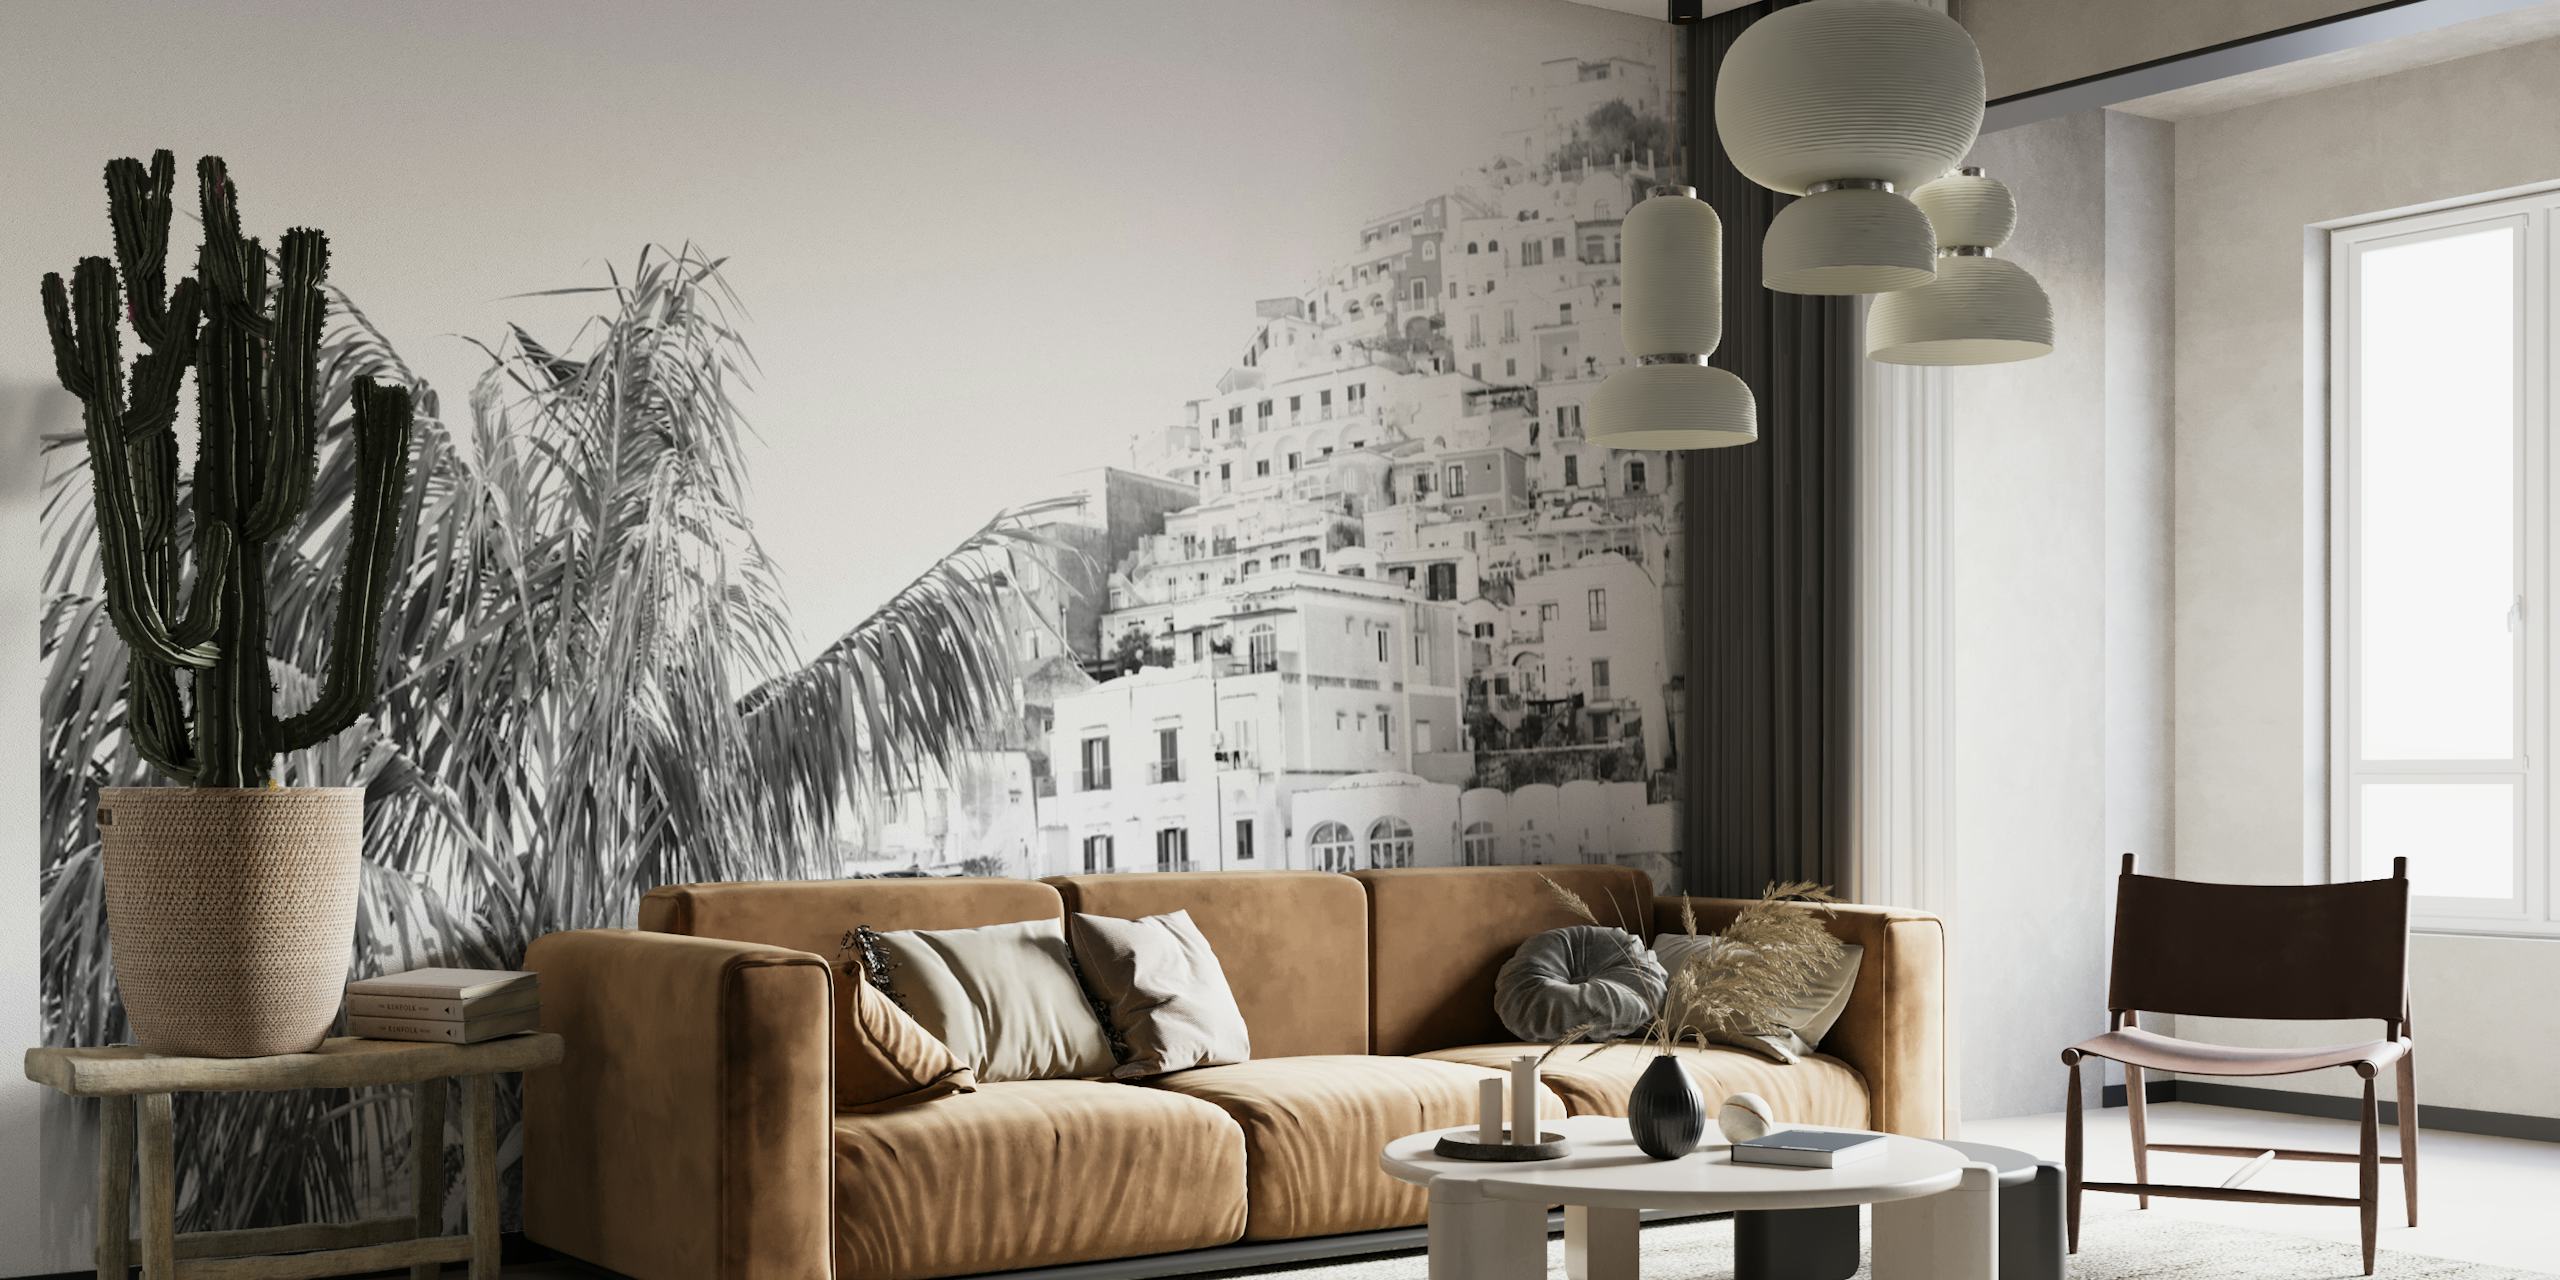 Monochromes Positano Hillside Wandbild mit Stadtarchitektur und üppigem Laub